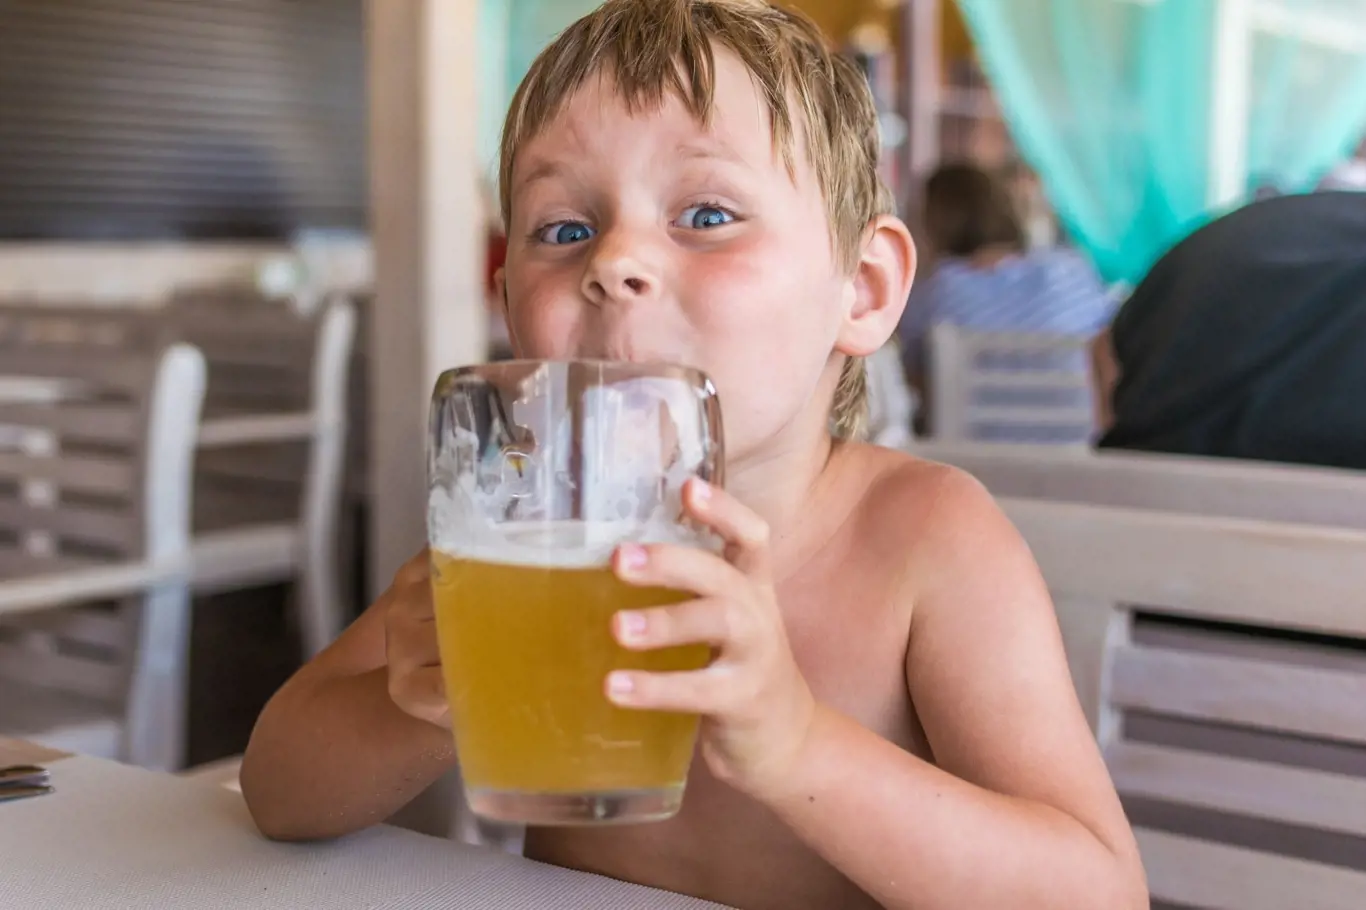 Nealko ovocná piva pijí i nejmenší děti. Je to problém, říkají odborníci.